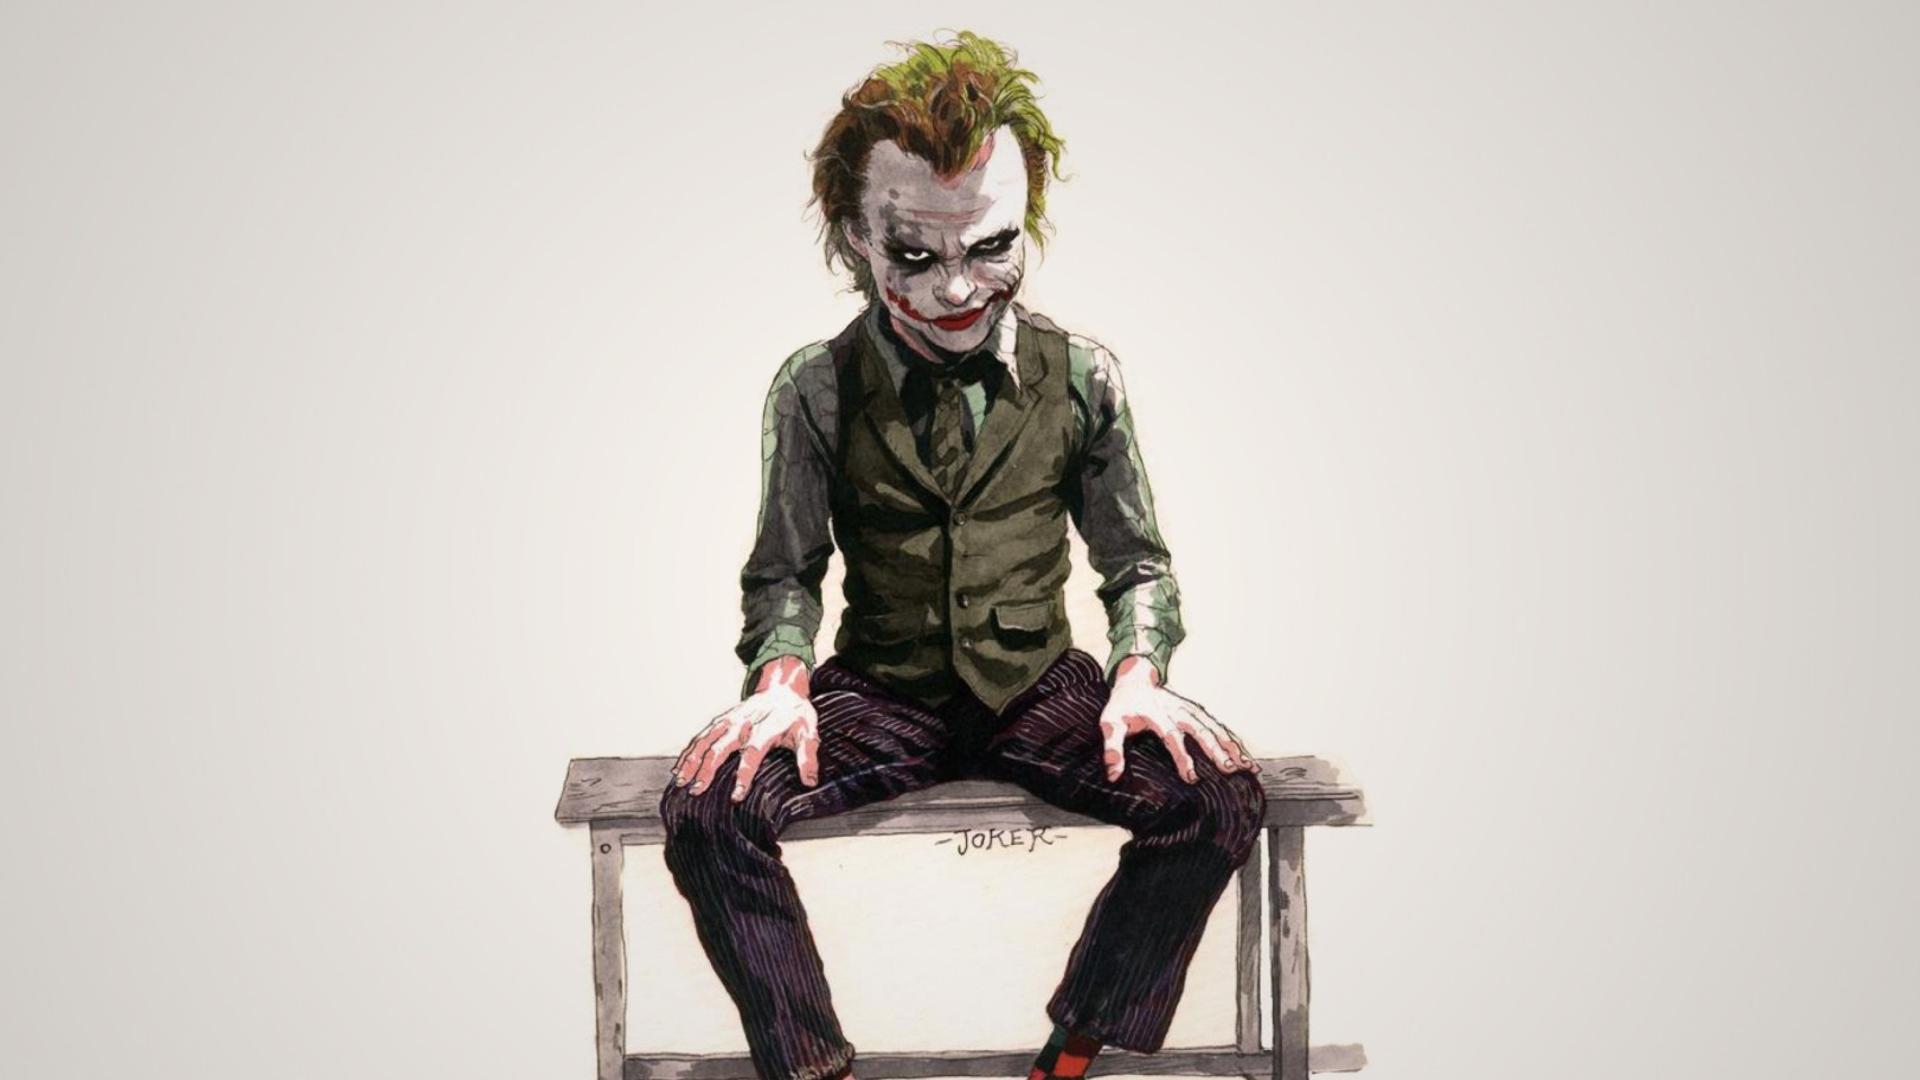 The Dark Knight, Joker wallpaper 1920x1080